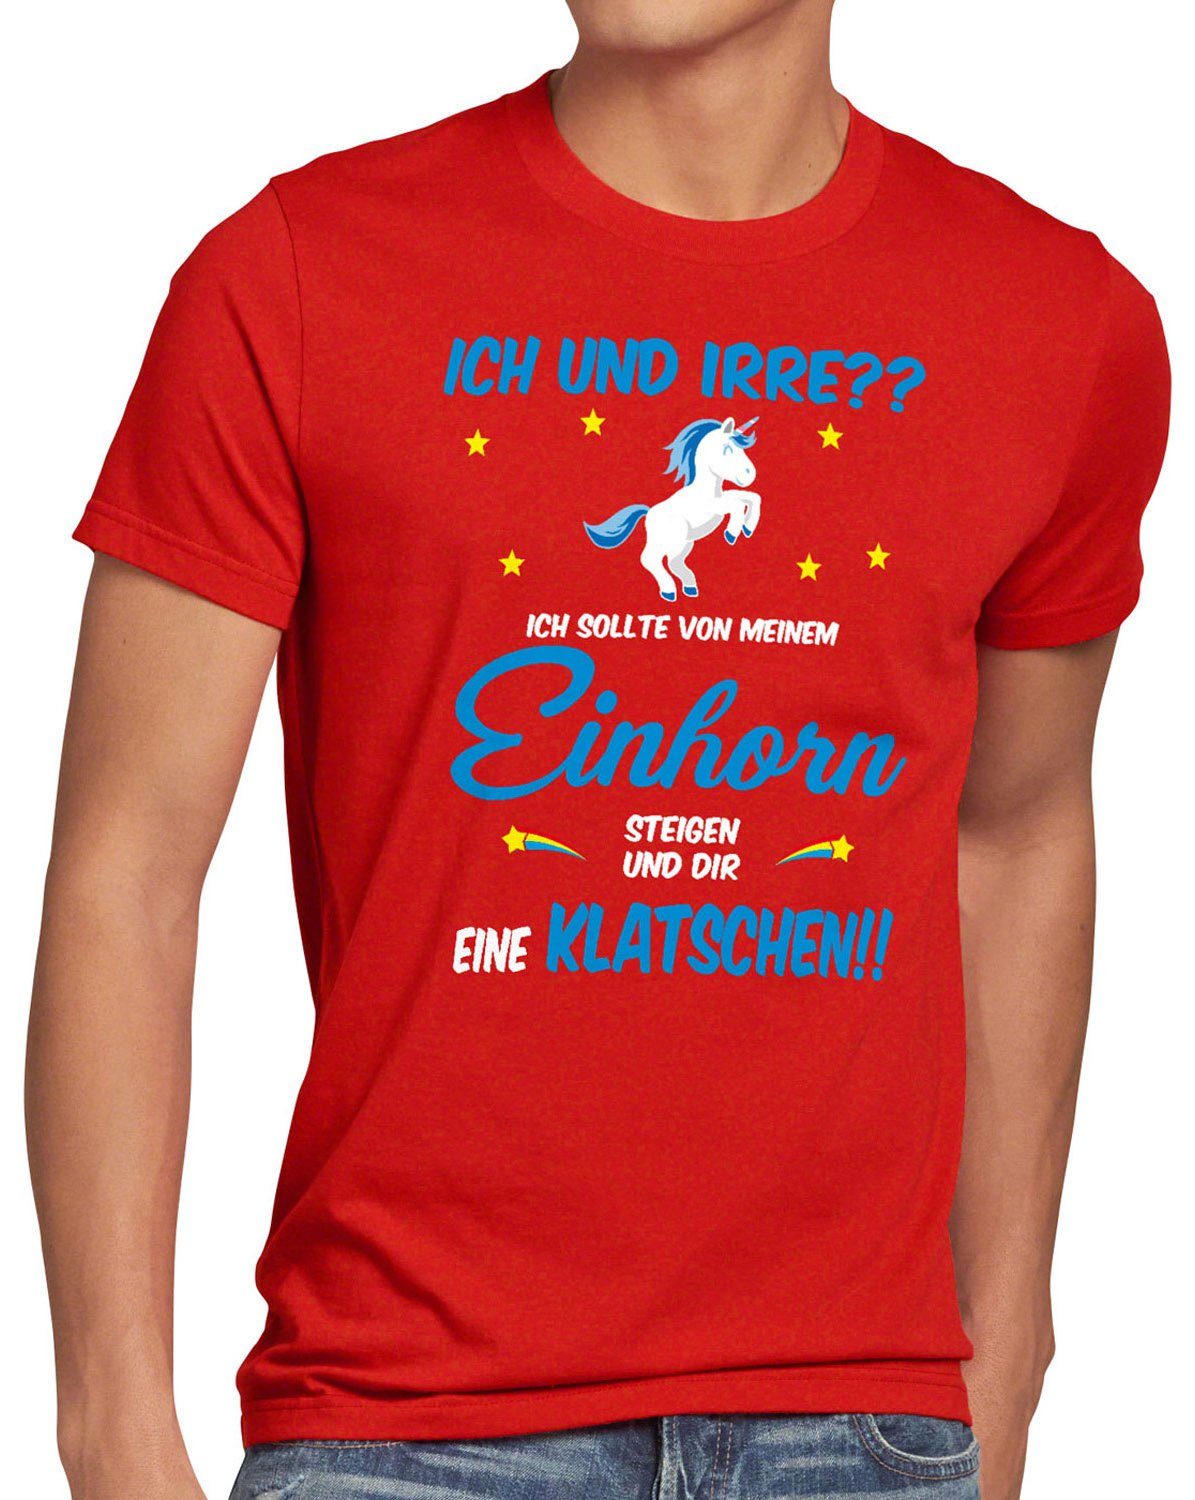 günstig kaufen style3 Print-Shirt Herren Einhörner Einhorn absteigen rot Fun ICH Spruch klatschen und IRRE? T-Shirt